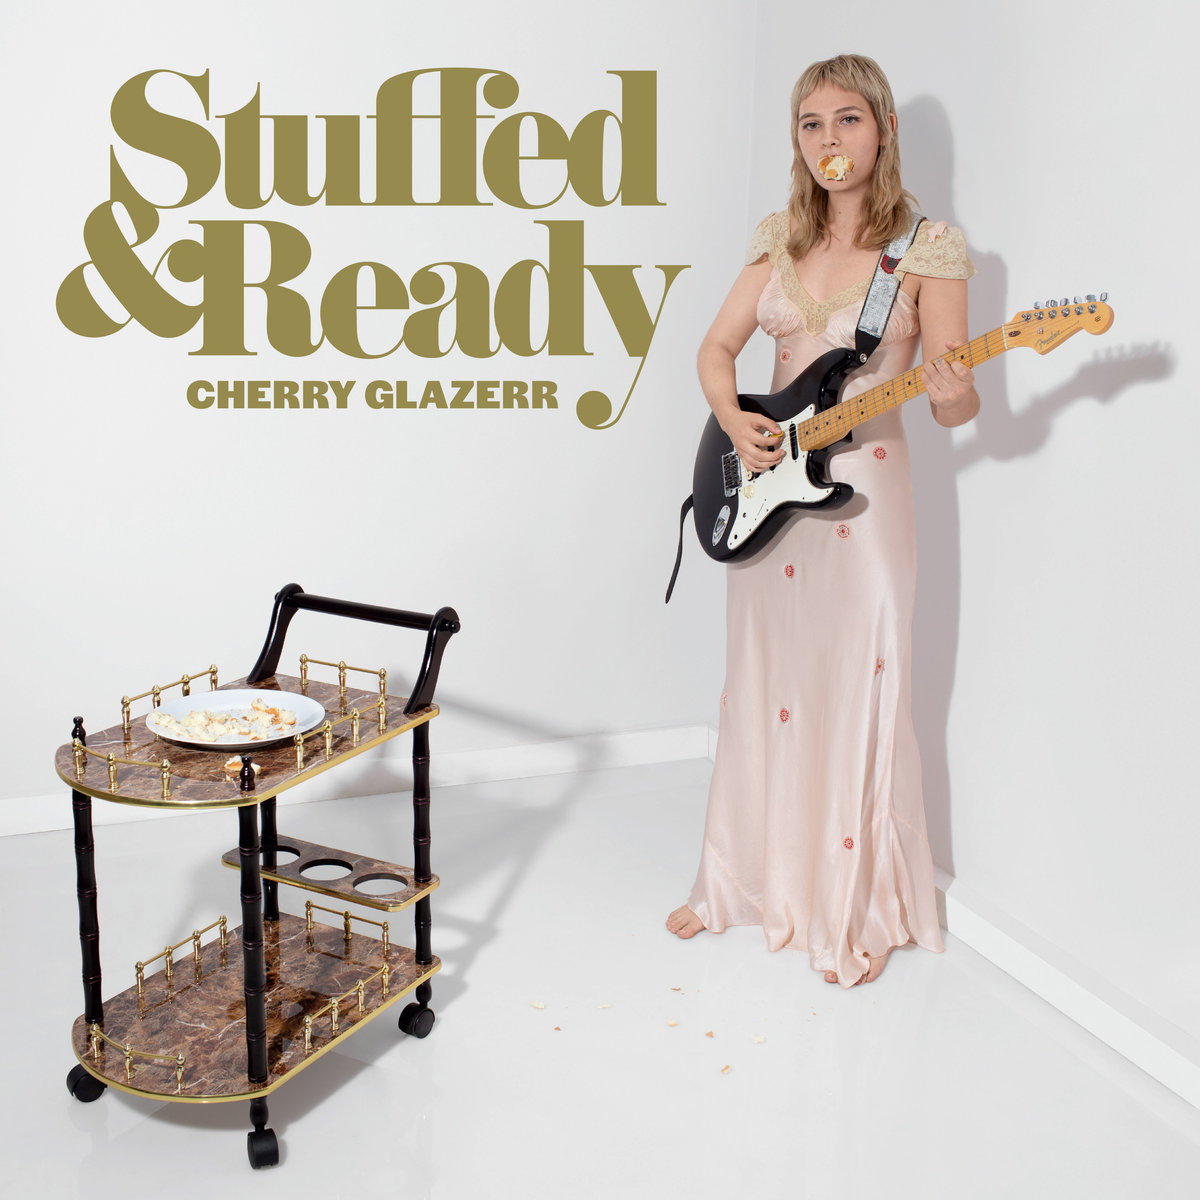 Cherry Glazerr – Stuffed & Ready (2019) [FLAC 24bit/44,1kHz]